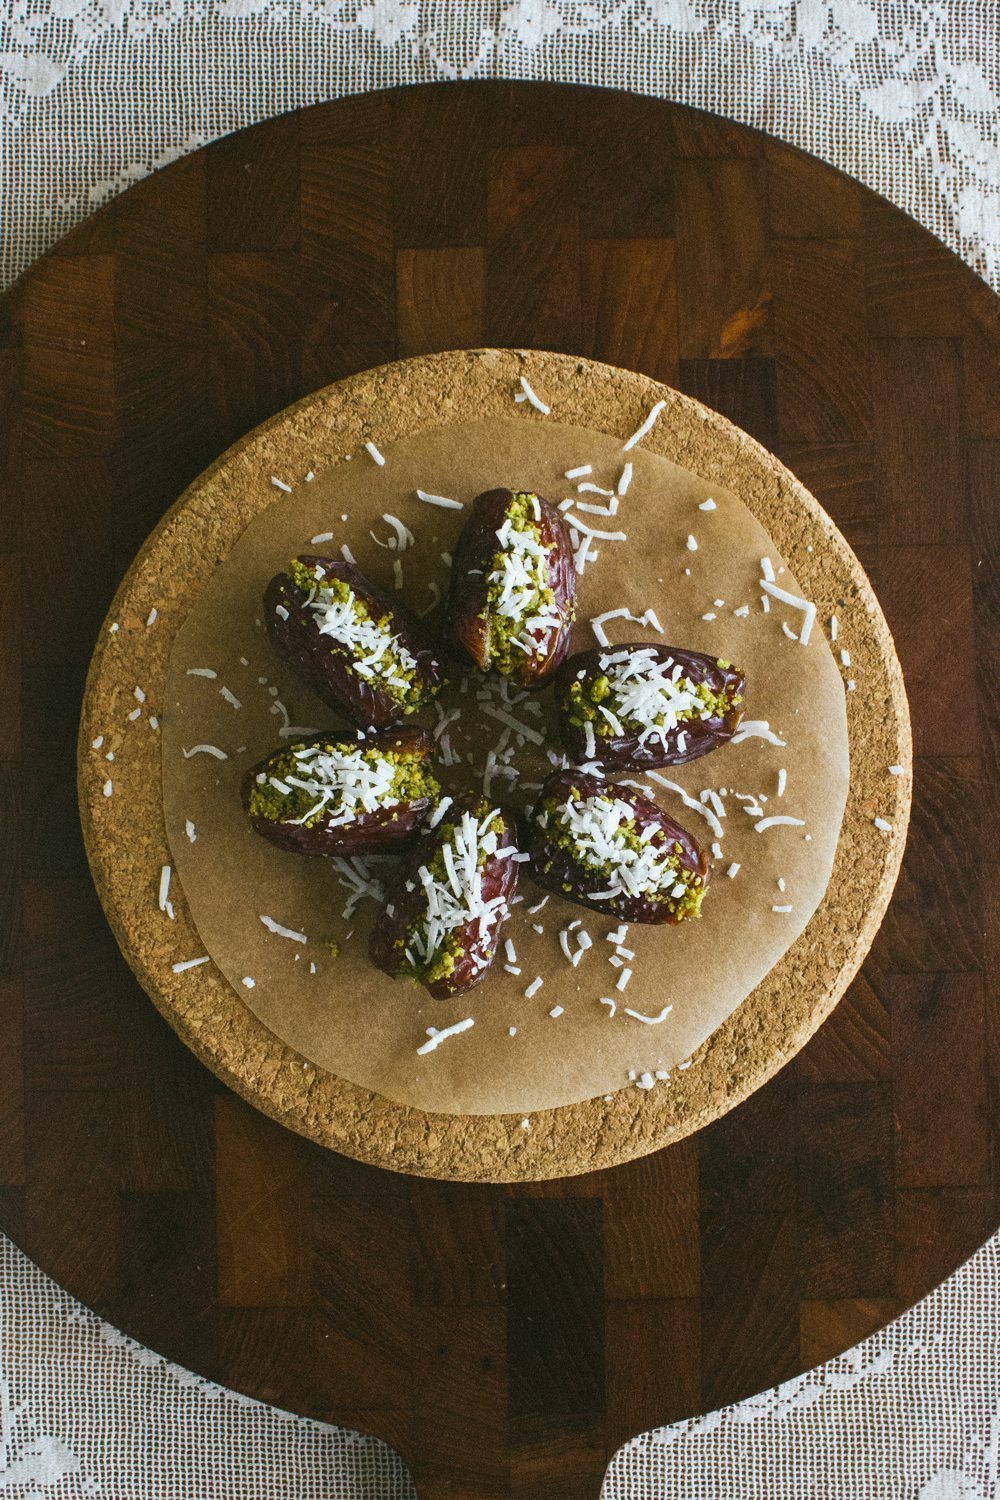 pistachio recipes 12